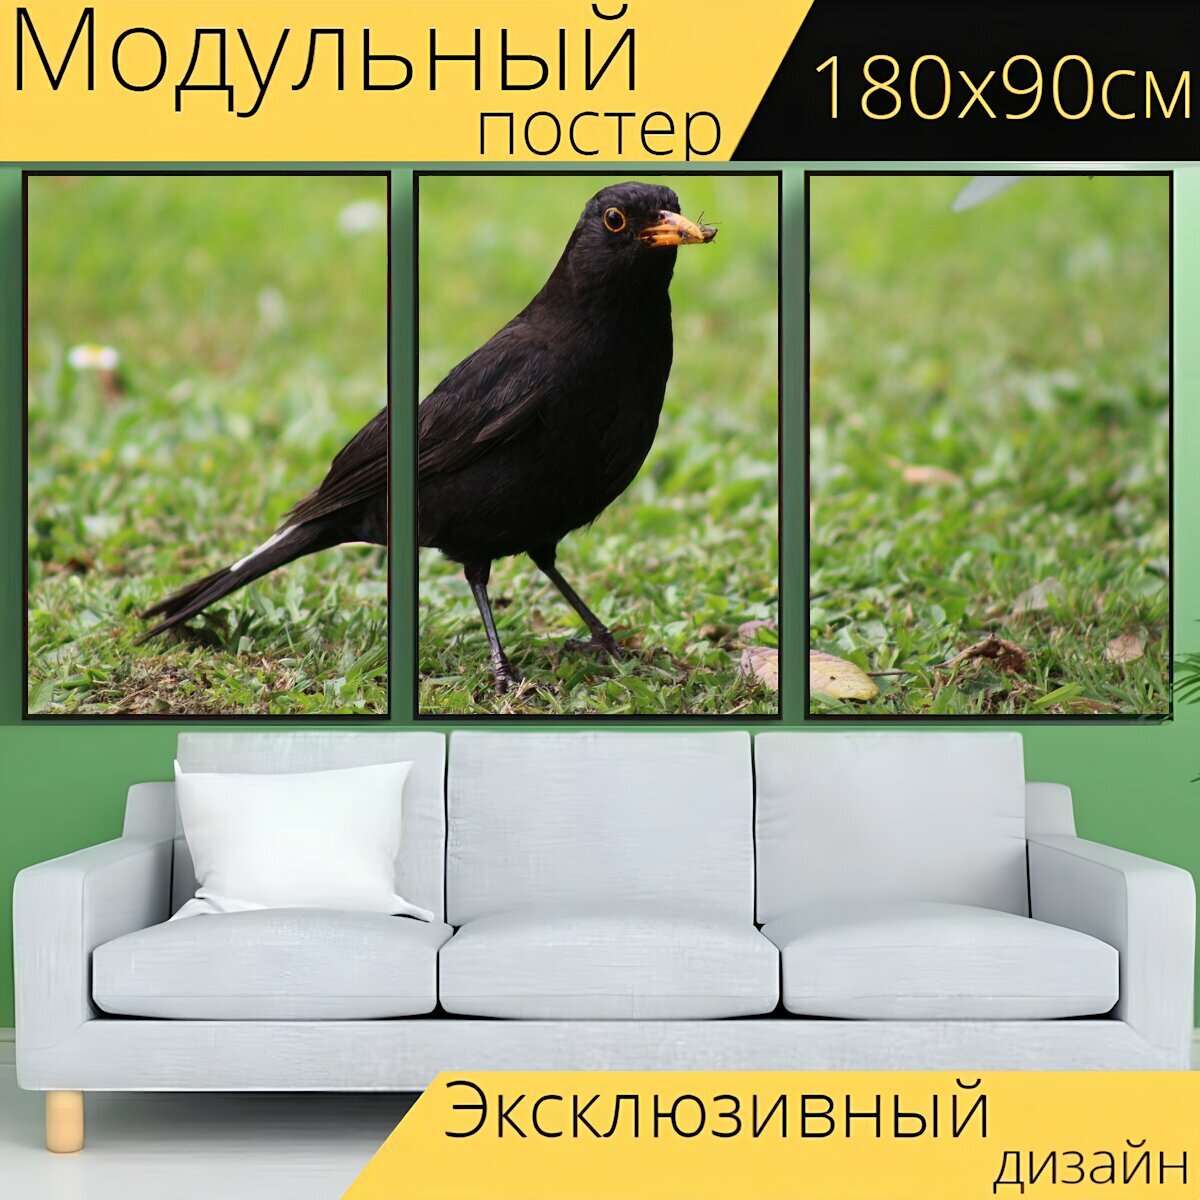 Модульный постер "Птица, черный дрозд, птичий" 180 x 90 см. для интерьера